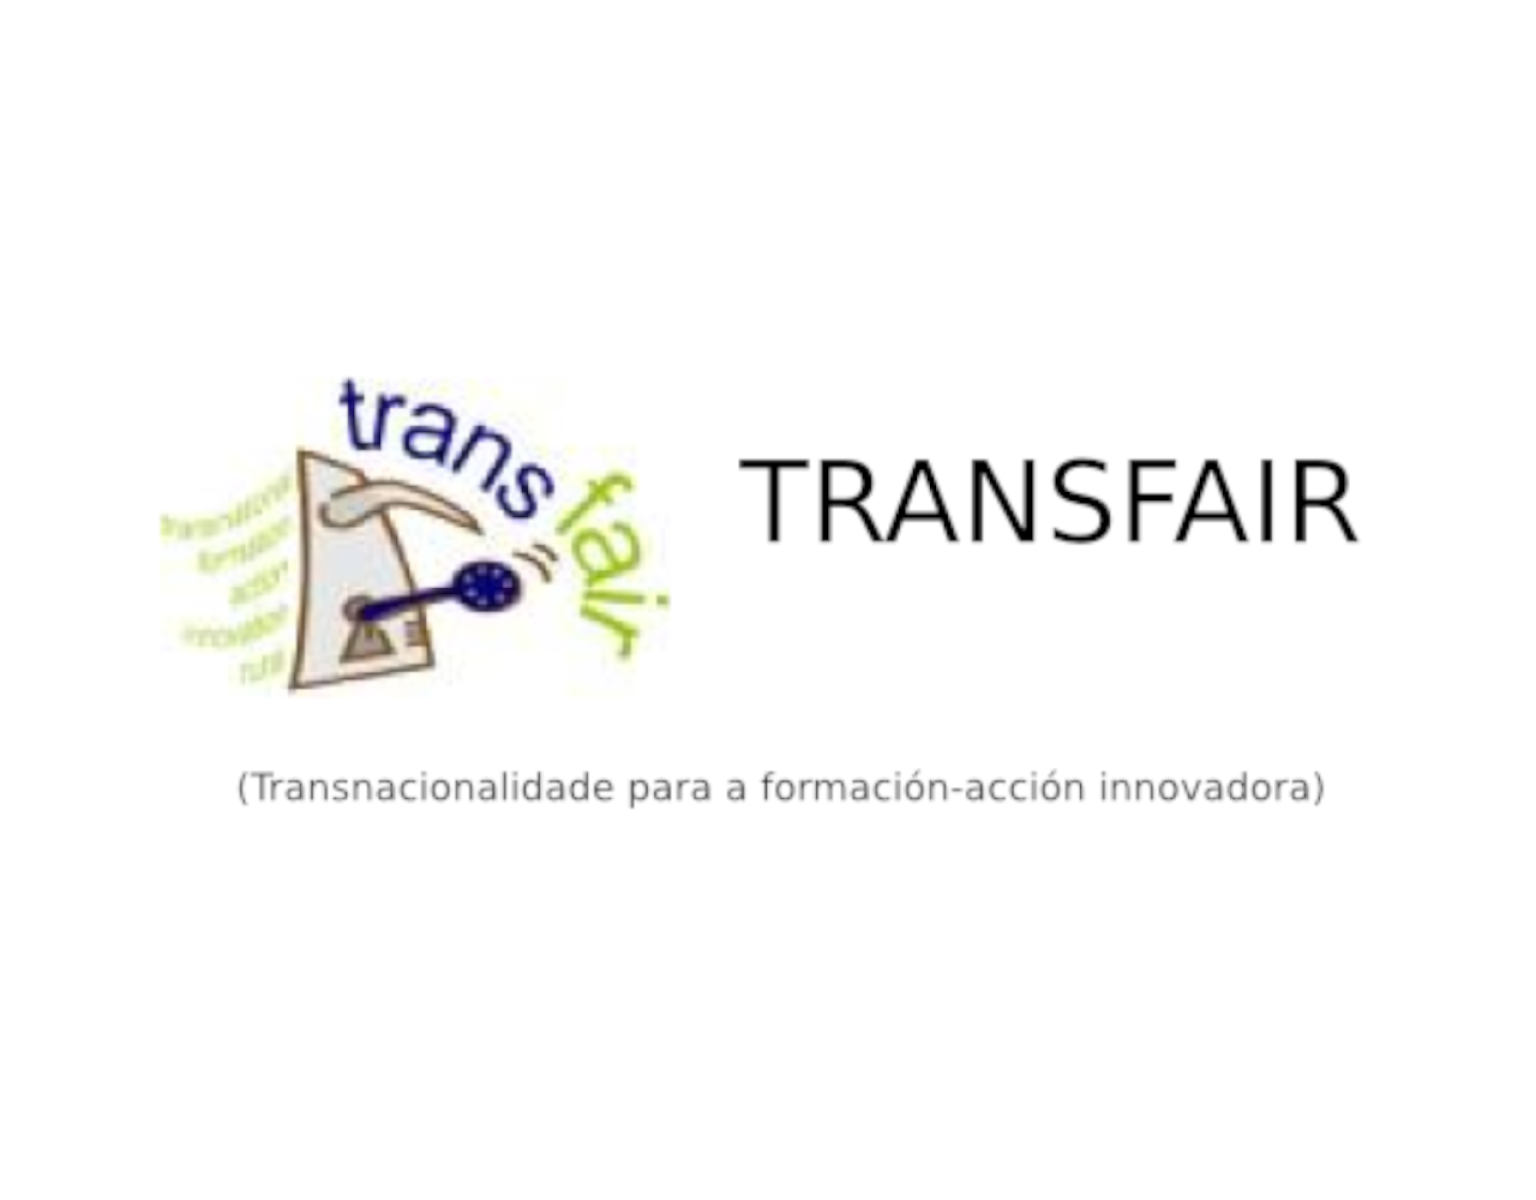 Transfair (H2020)